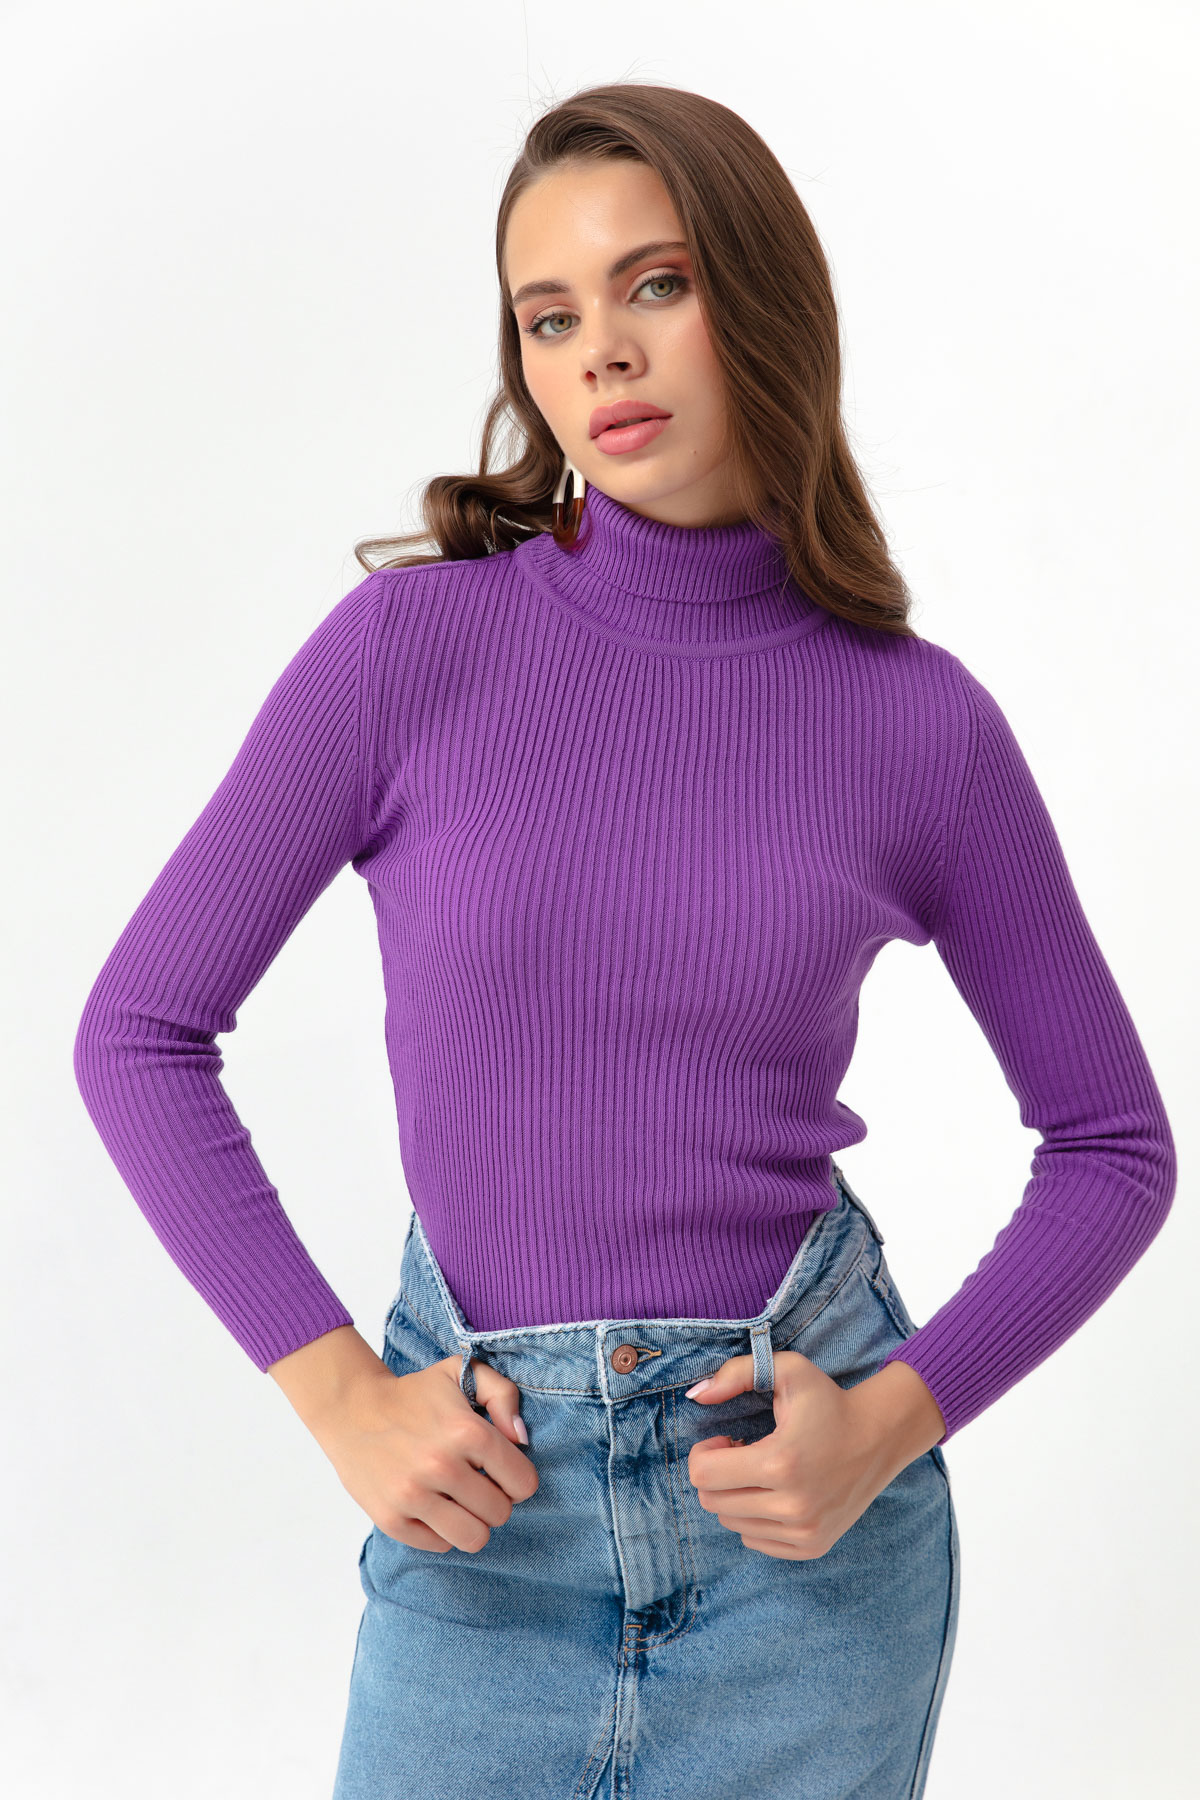 Women's Purple Turtleneck Knitwear Sweater